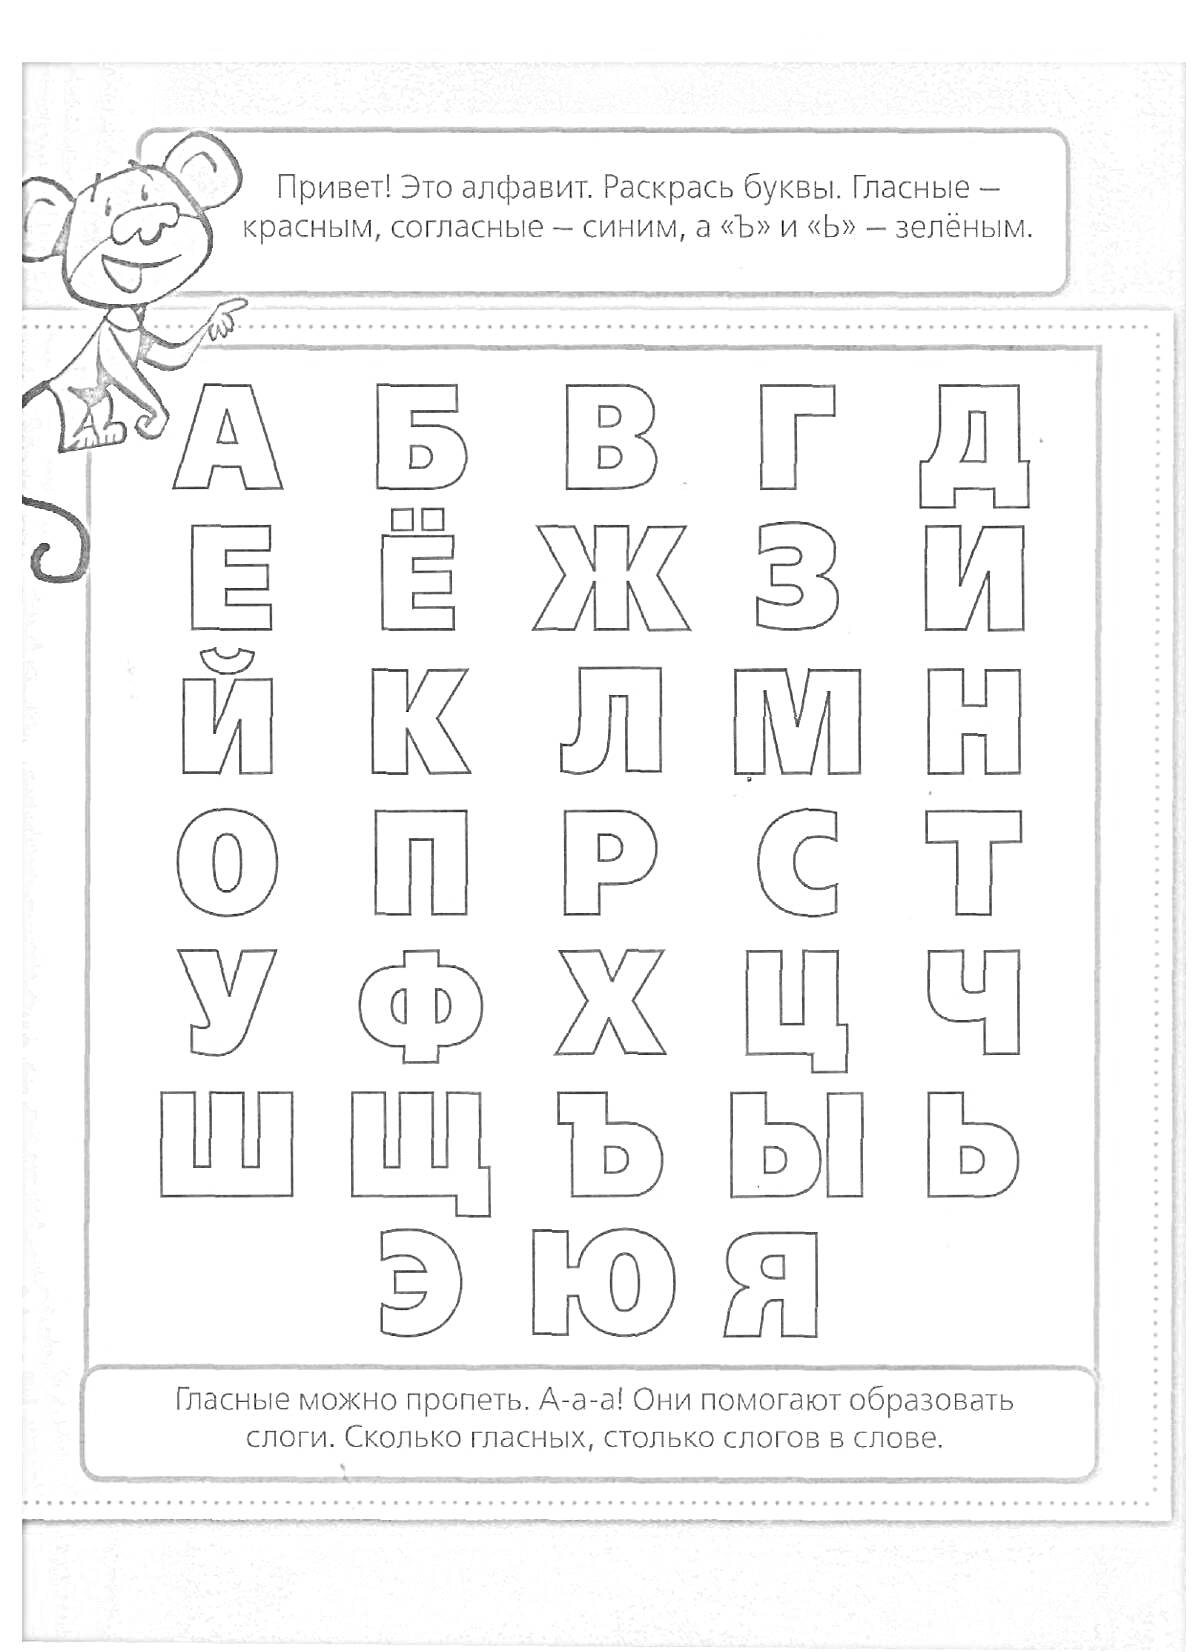 Раскраска Раскраска букв русского алфавита: гласные красным, согласные синим, «ъ» и «ь» зелёным